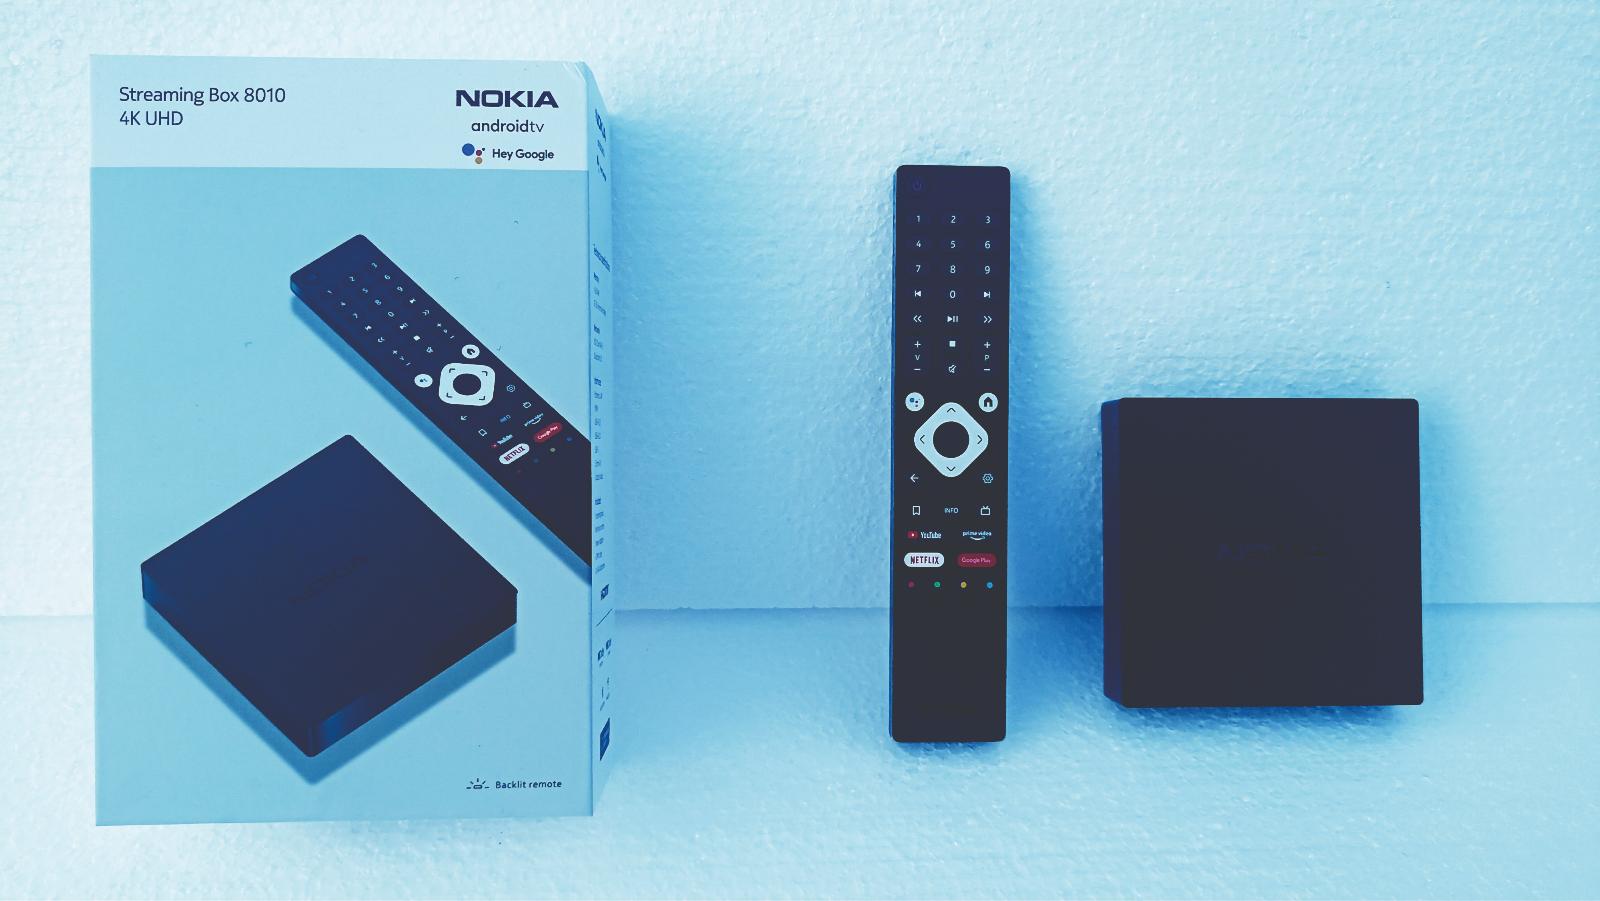 Nokia Streaming Box 8010 Android TV Výtečná kombinace cena/výkon a  nejrychlejší Wi-Fi